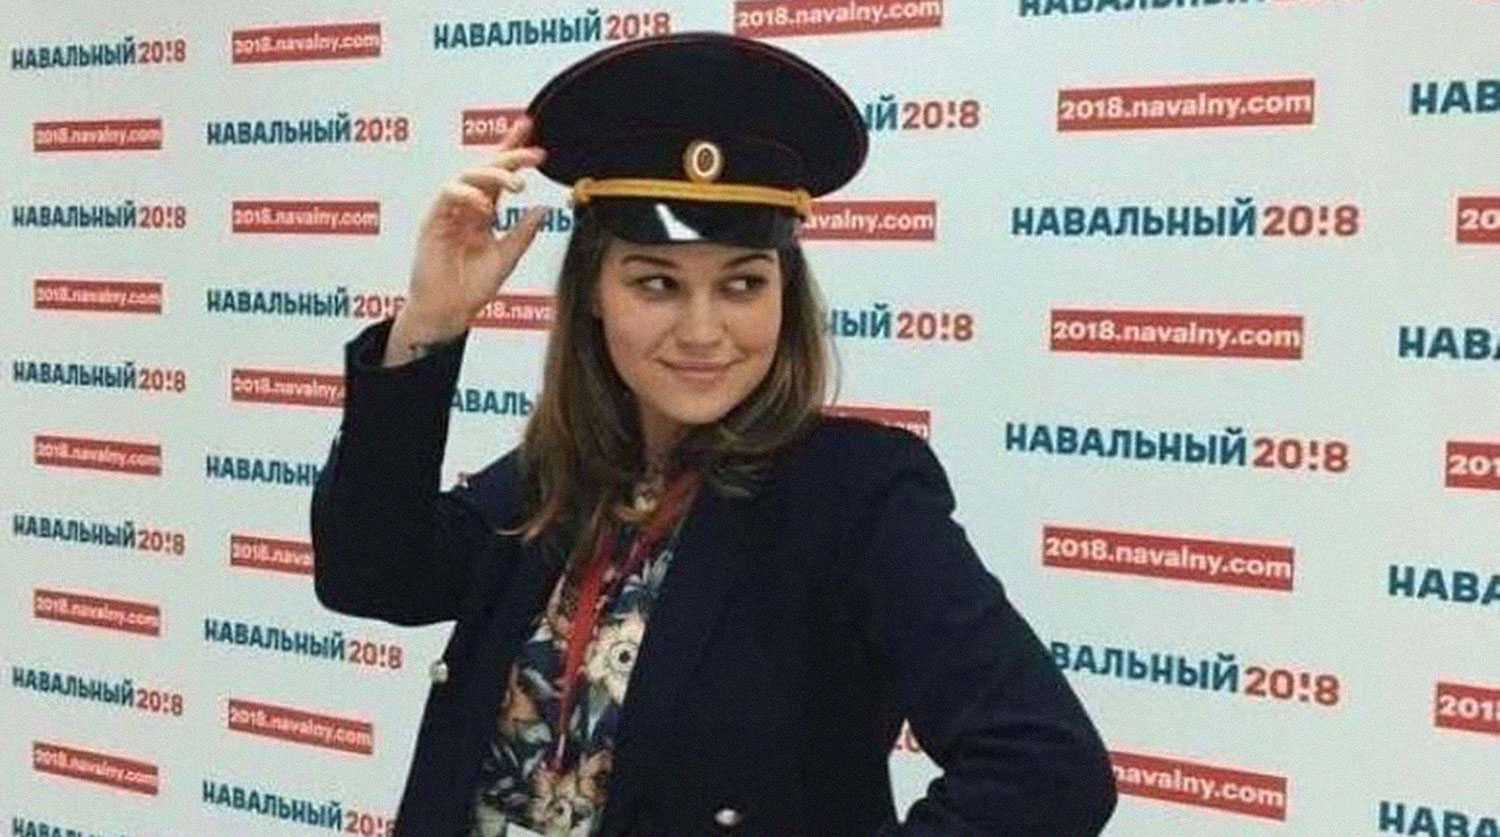 Бывшая сторонница Навального раскрыла правду об организации работы его штабов